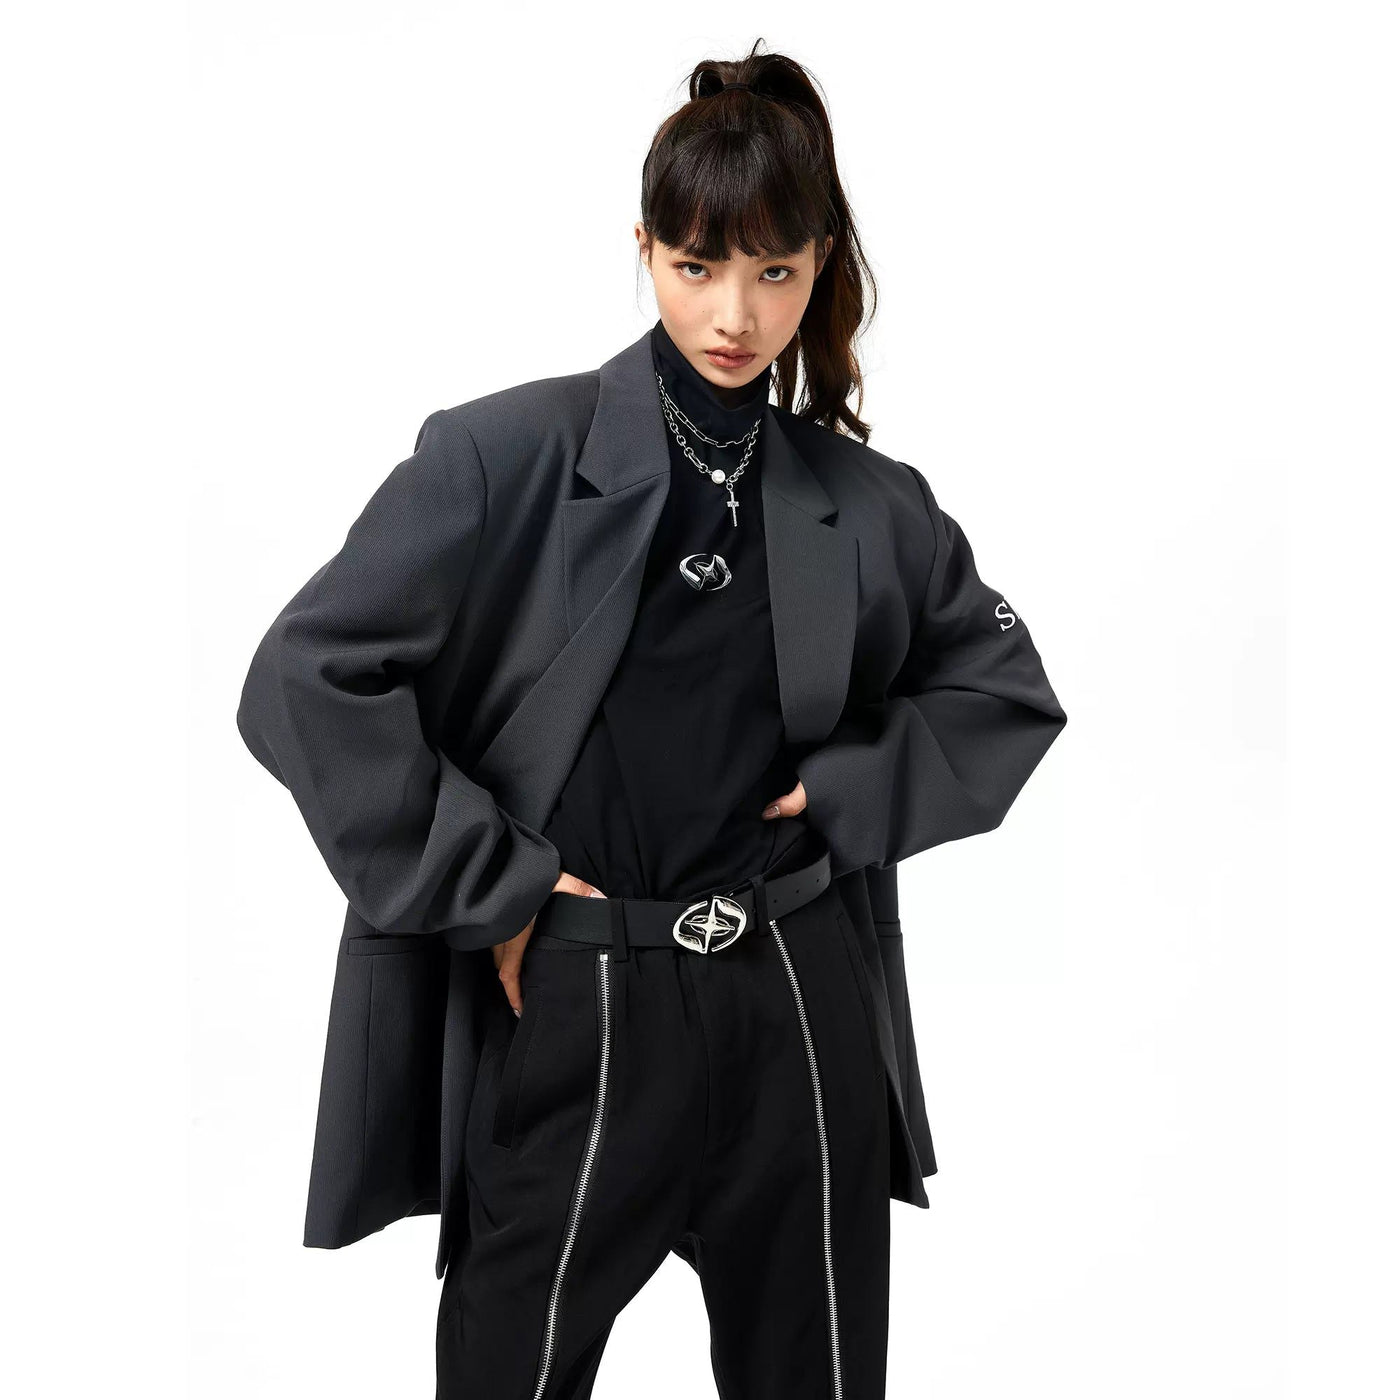 Metallic Star Detail Belt Korean Street Fashion Belt By ETERNITY ITA Shop Online at OH Vault